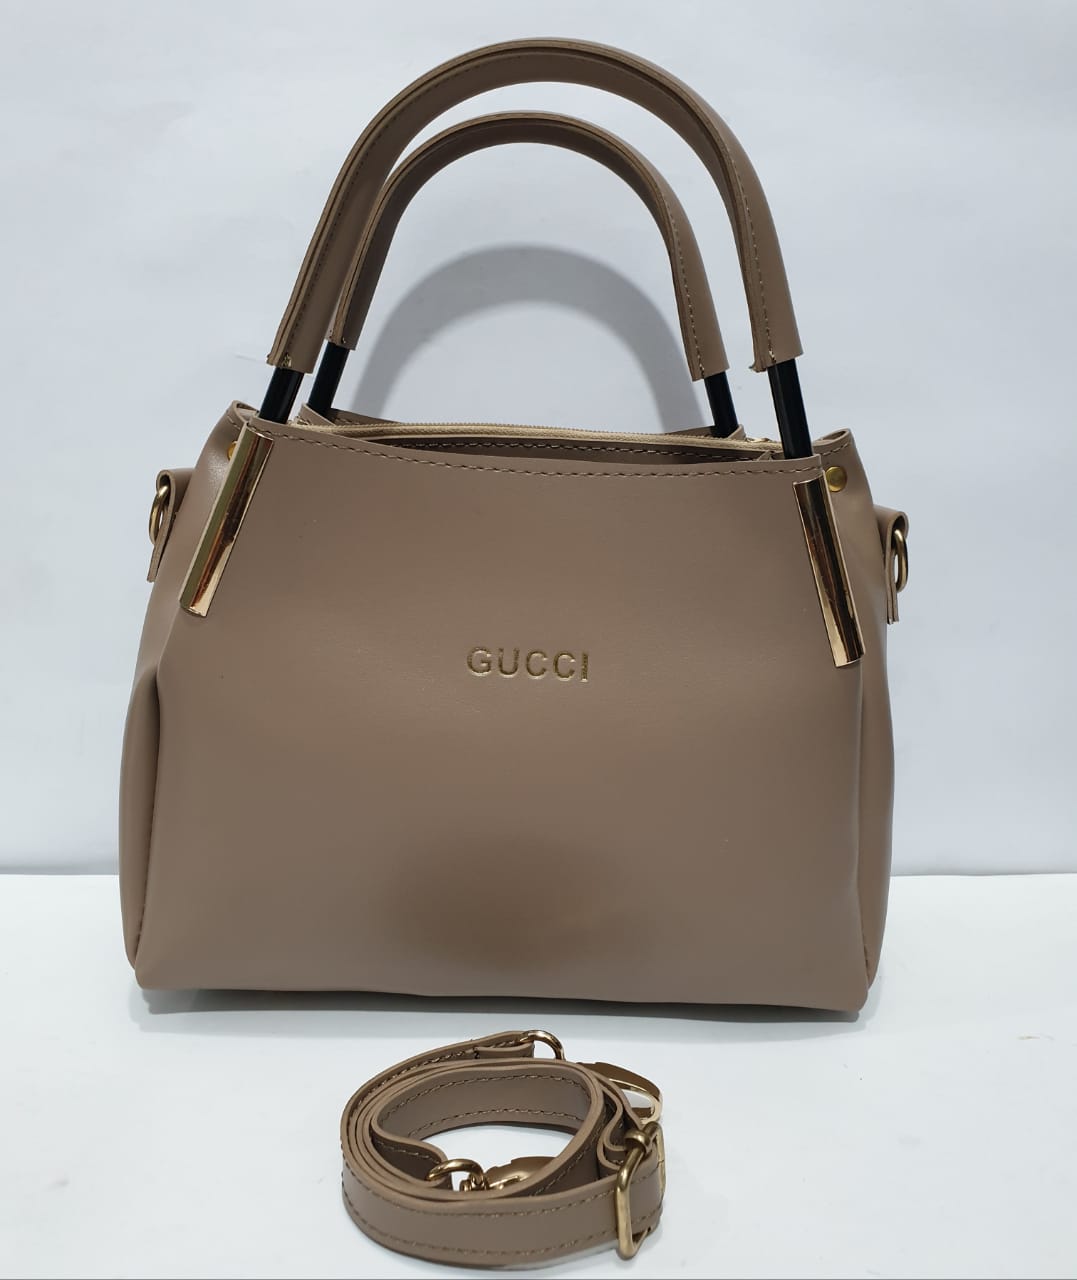 GUCCI Double Handle Ladies handbag – MAROON